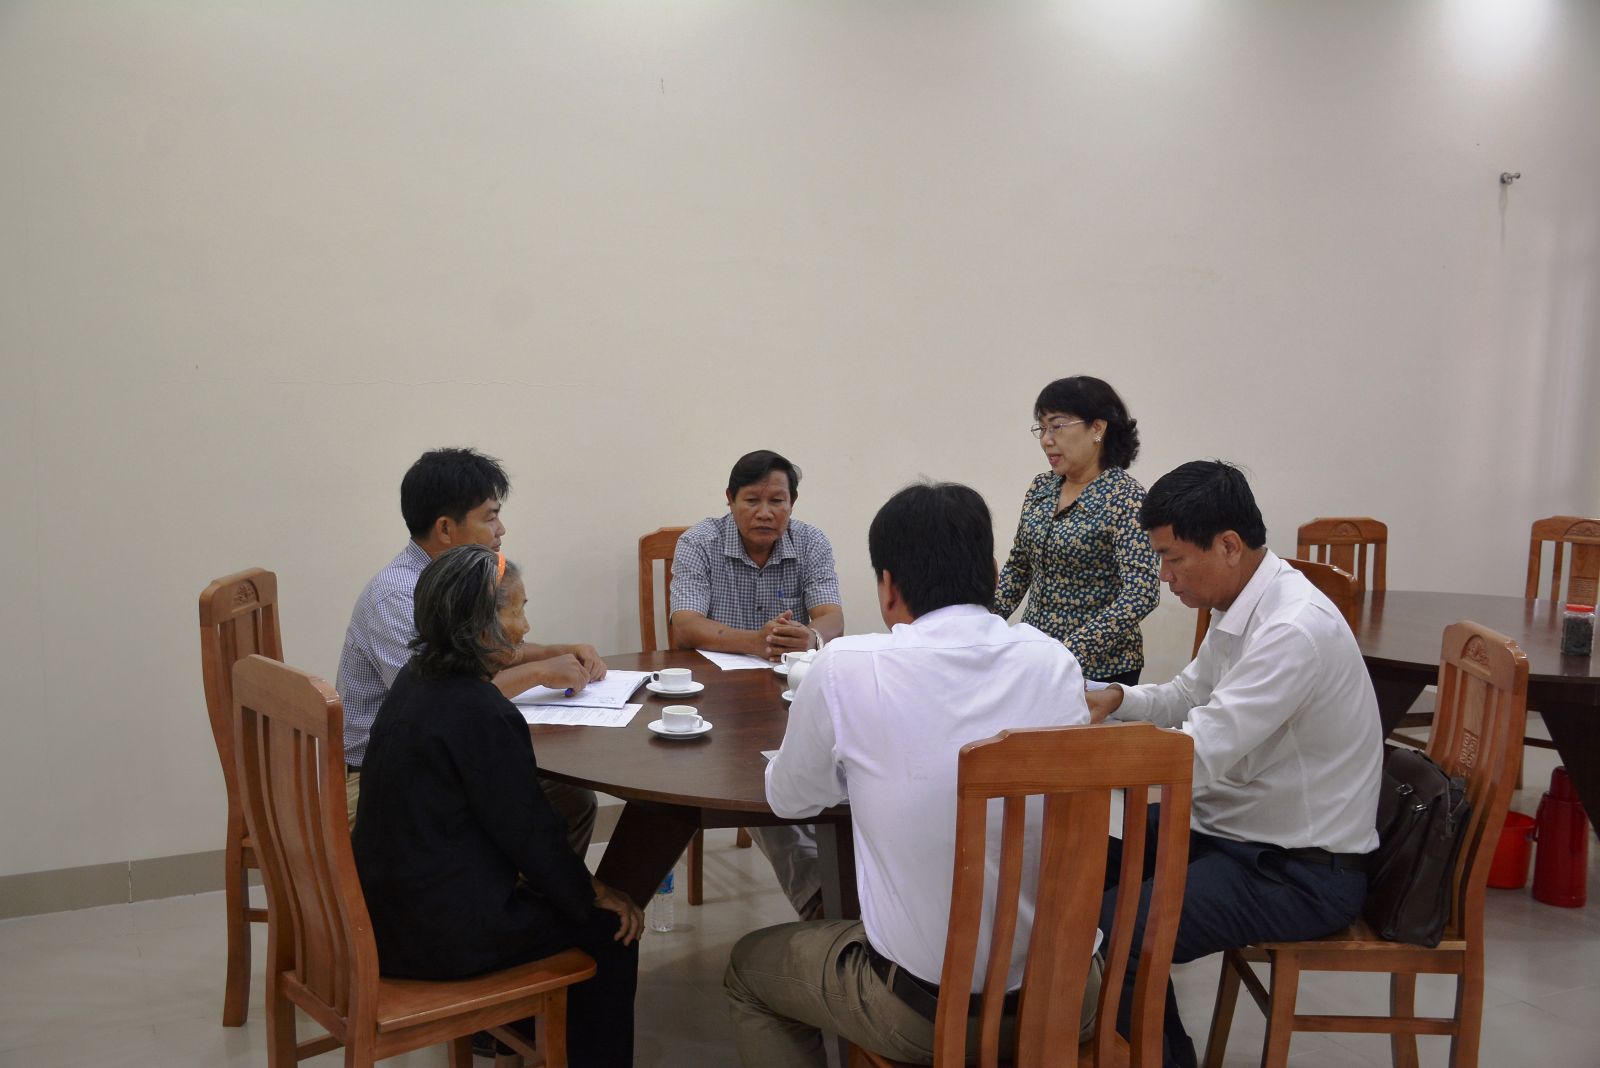 Hòa giải viên Trần Thị Nhanh hòa giải thành vụ tranh chấp liên quan đến đất đai giữa đại diện nguyên đơn ông Trần Văn Khéo, anh Huỳnh Đinh Thiện và UBND huyện Thủ Thừa